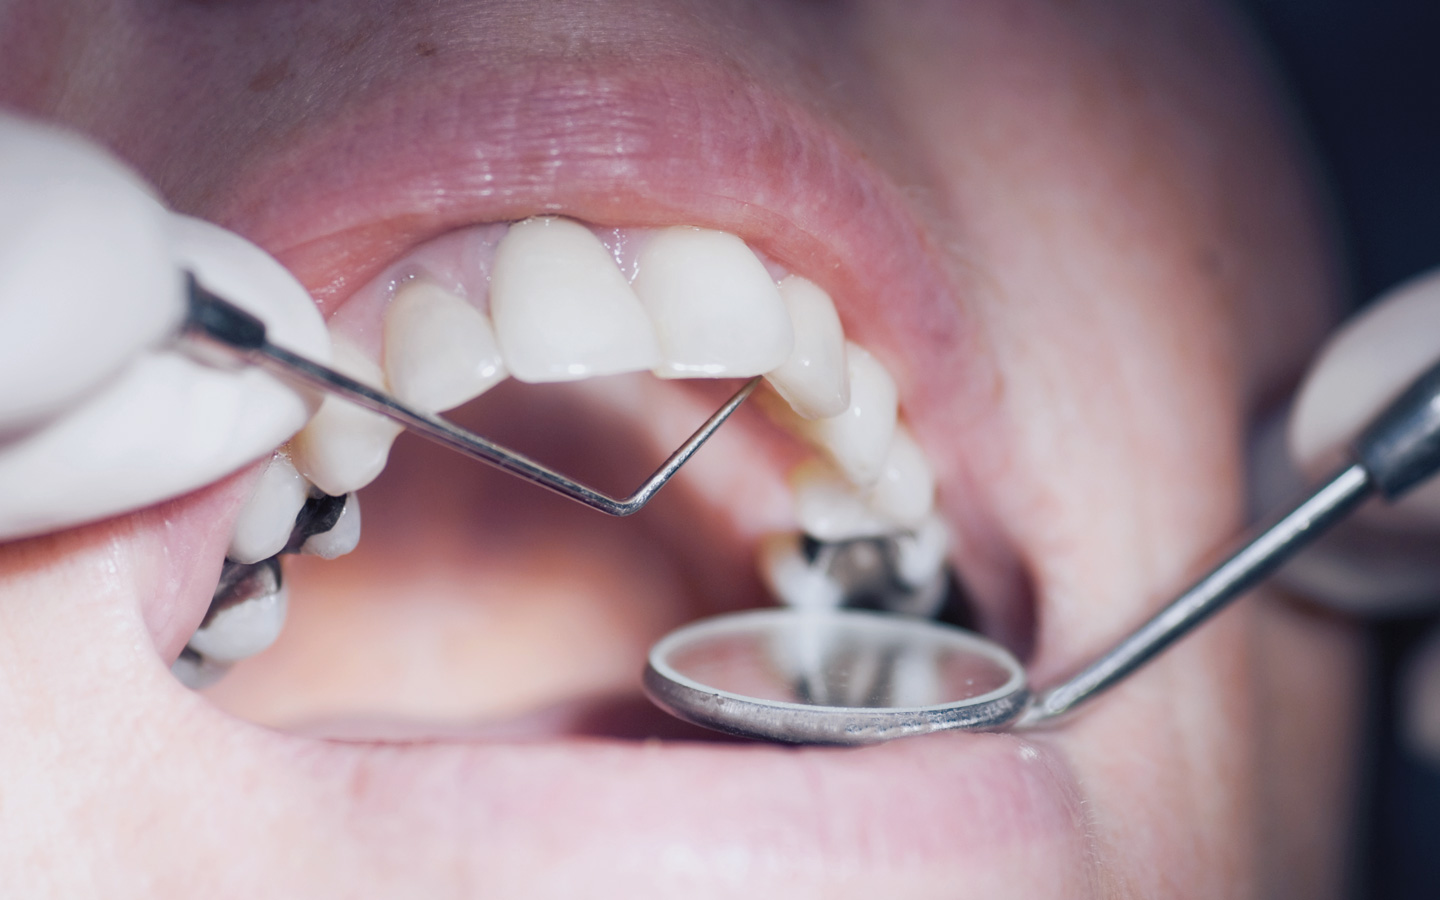 Foto: Ein geöffneter Mund, in dem Zähne mit verschiedenen Füllungen zu sehen sind, die mit Zahnarztbesteck untersucht werden.